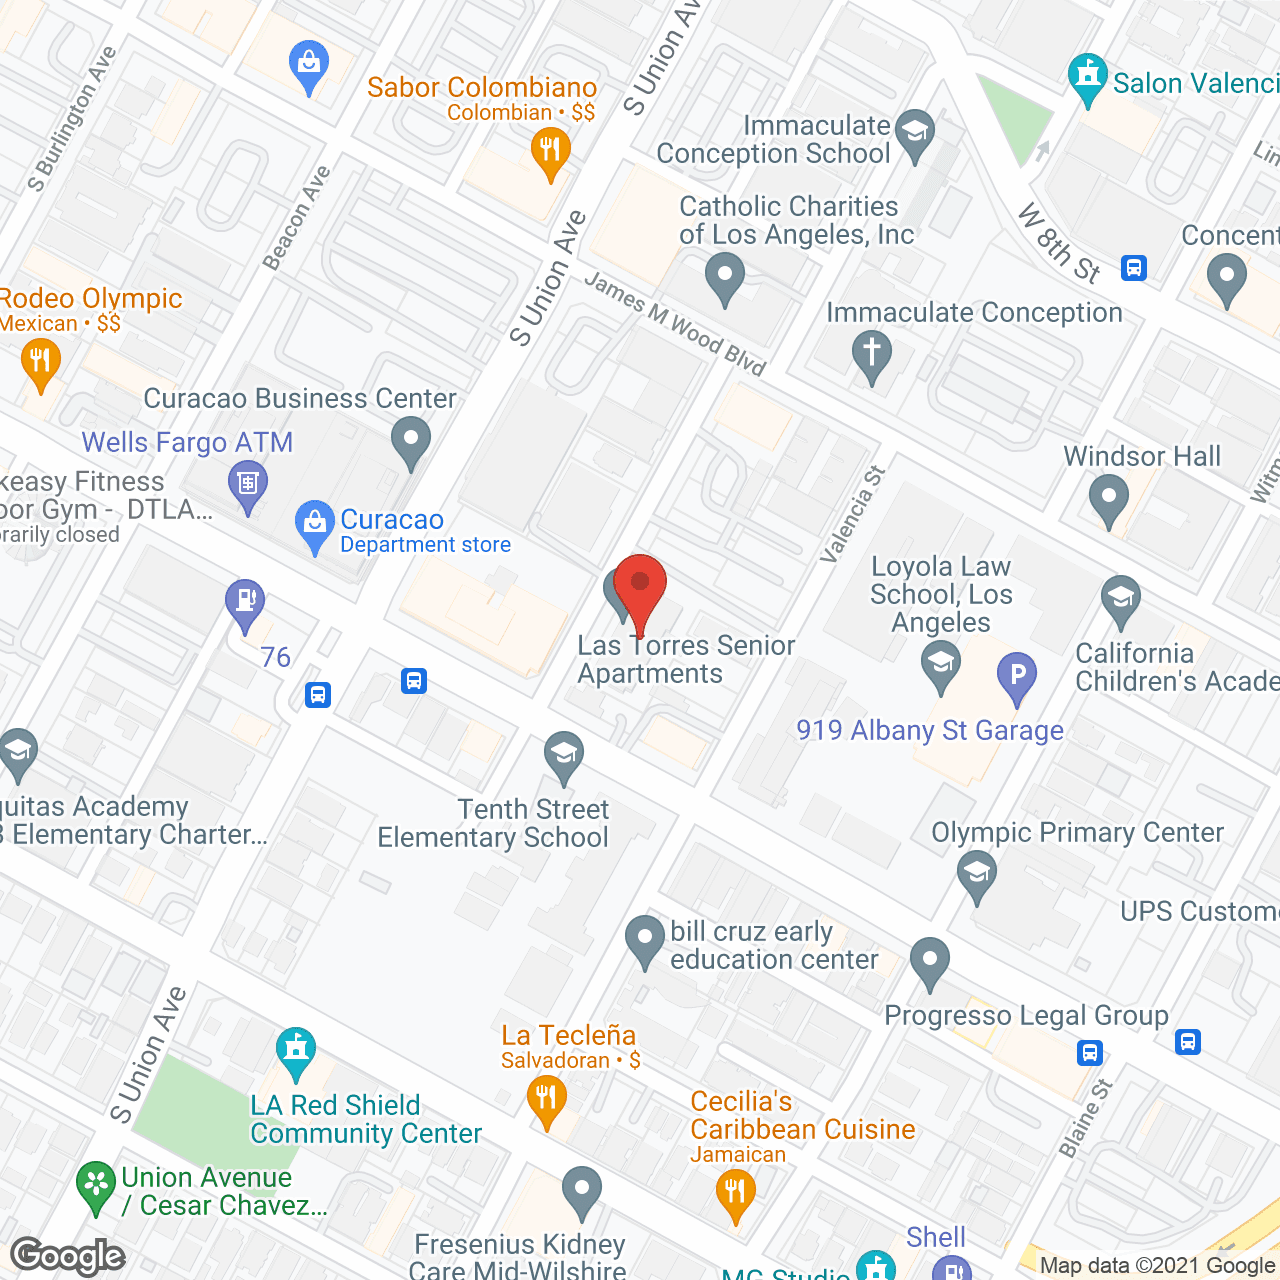 Las Torres Senior Apartments in google map